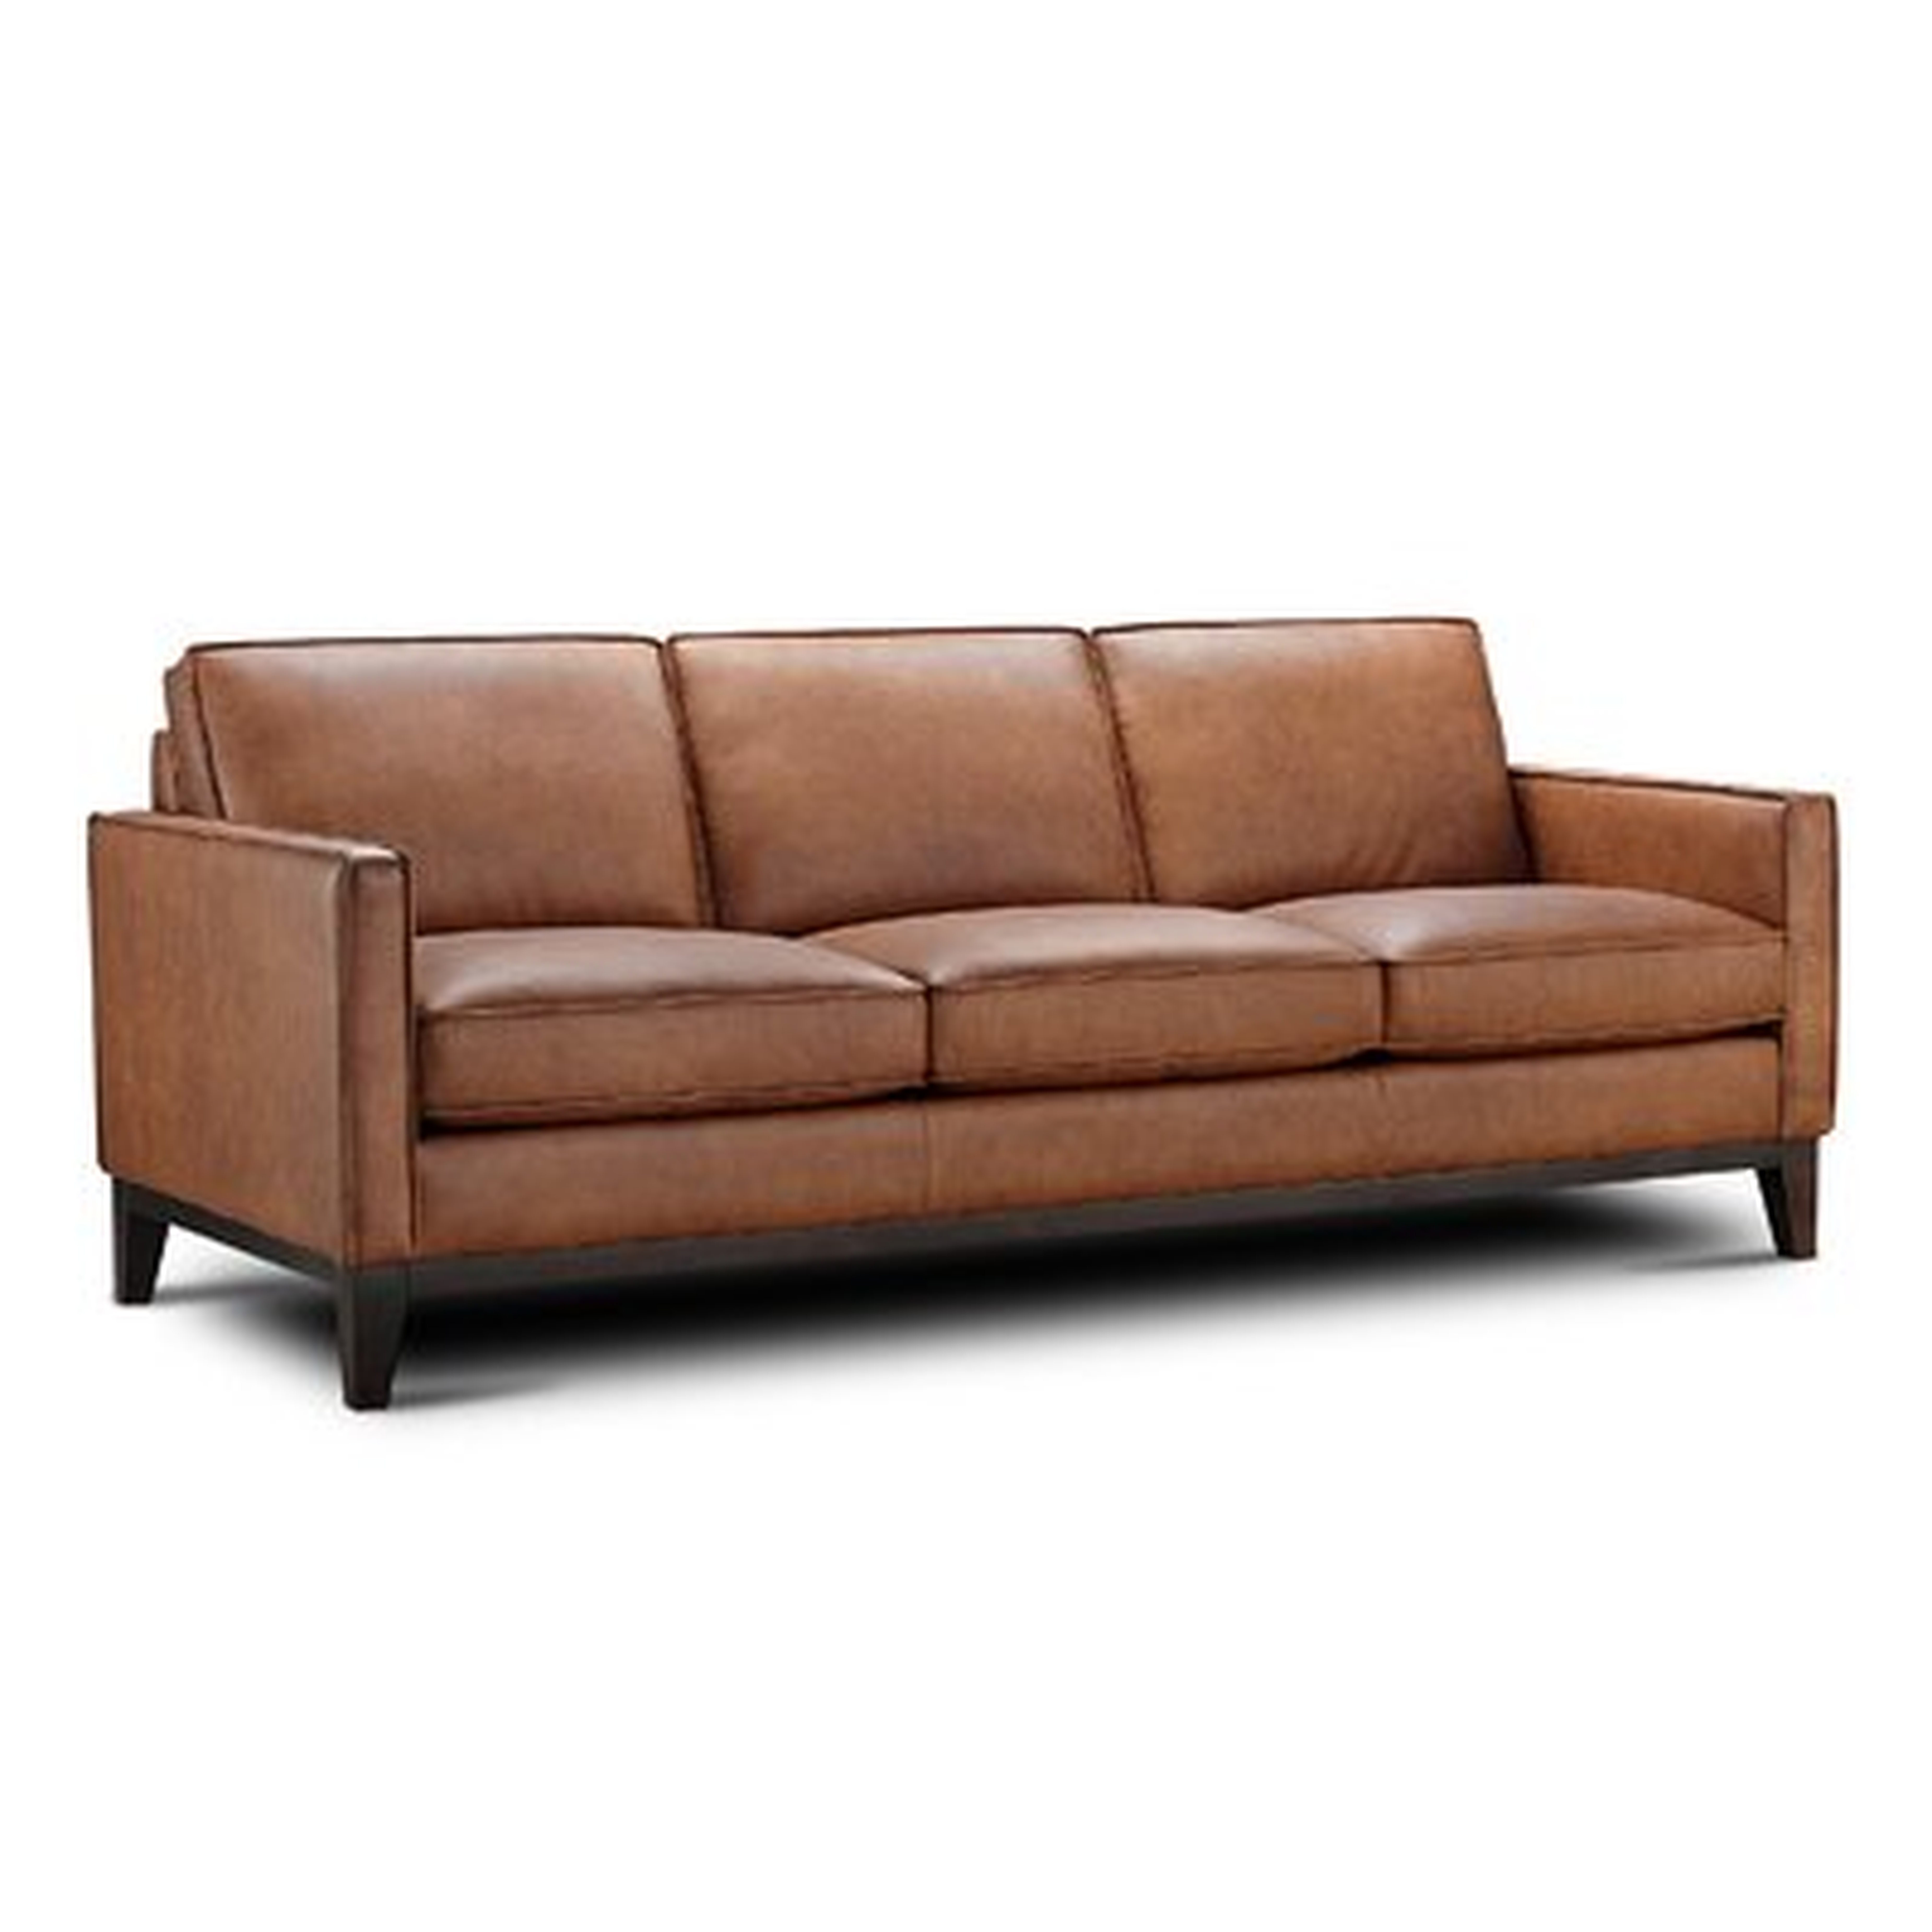 Whitson Leather Sofa - Wayfair